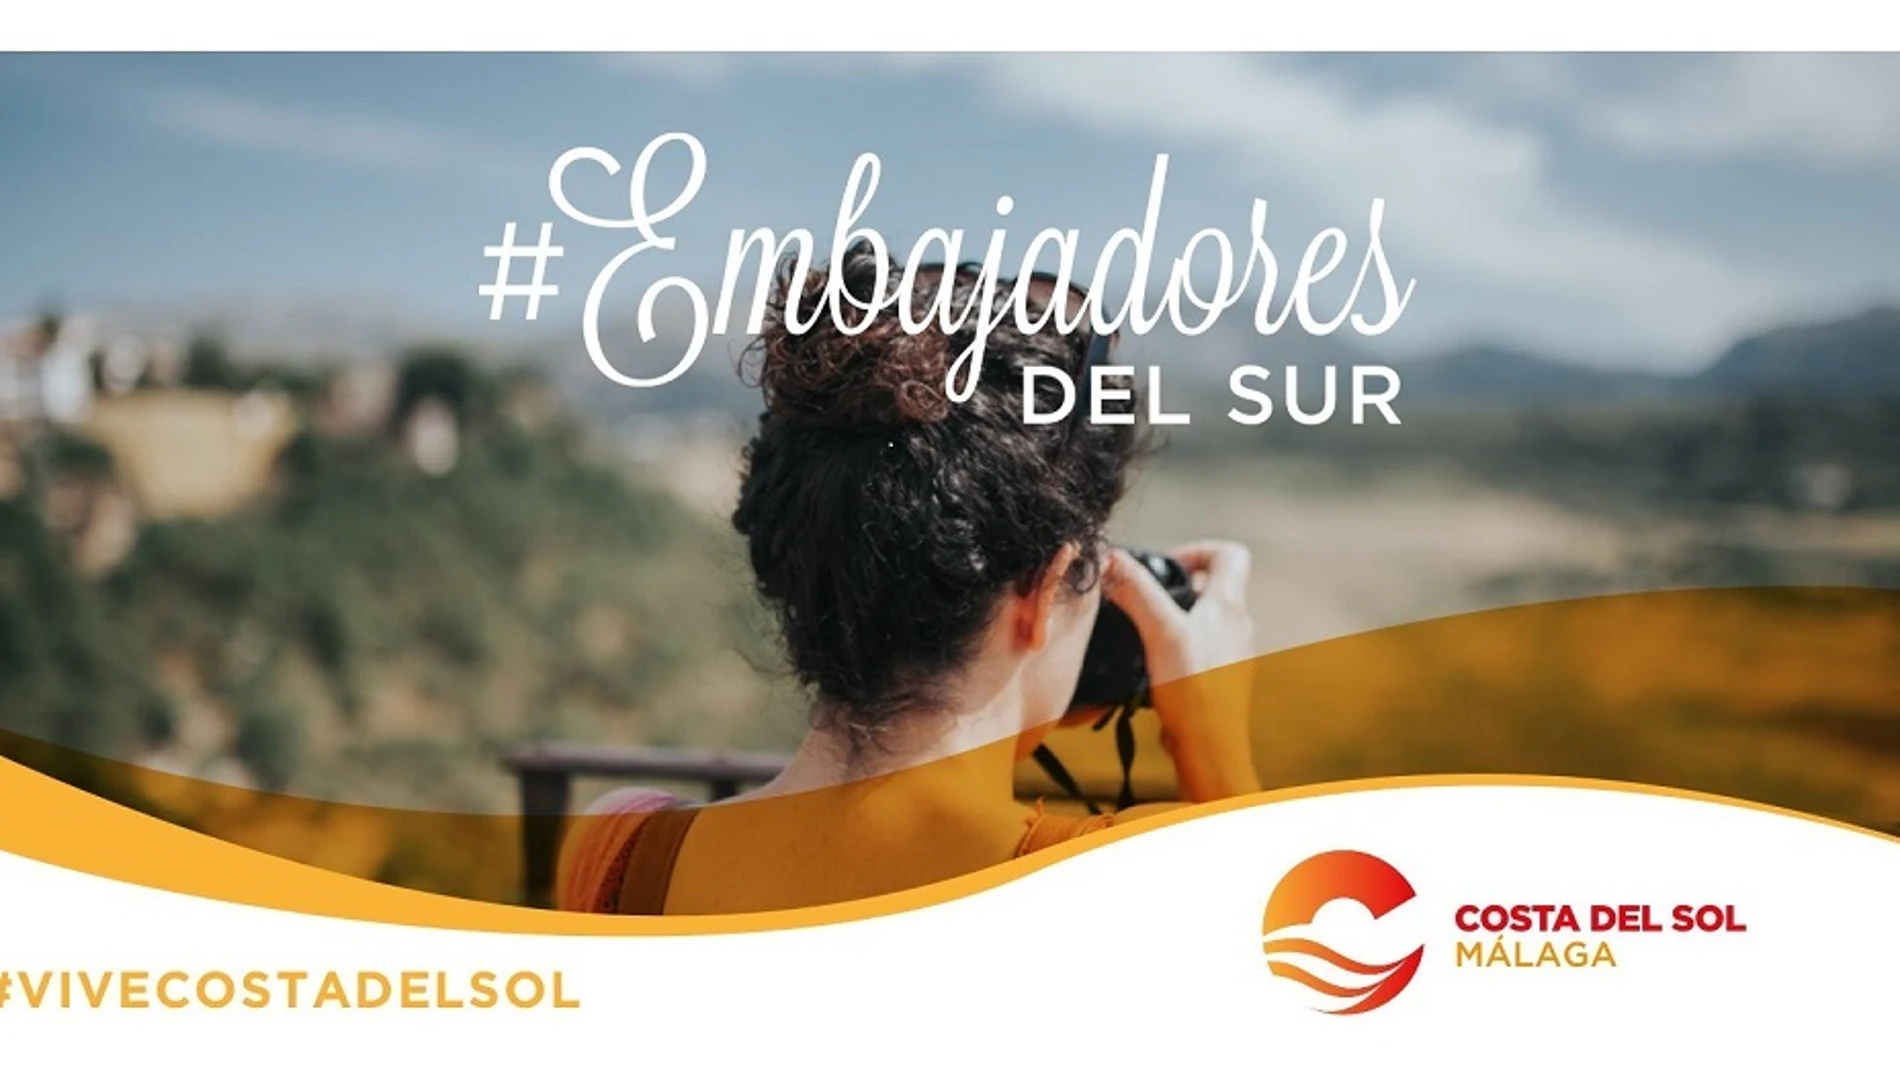 Málaga.-Concurso de Turismo Costa del Sol 'Embajadores del Sur' consigue más de 28.000 visitas a su web en junio y julio